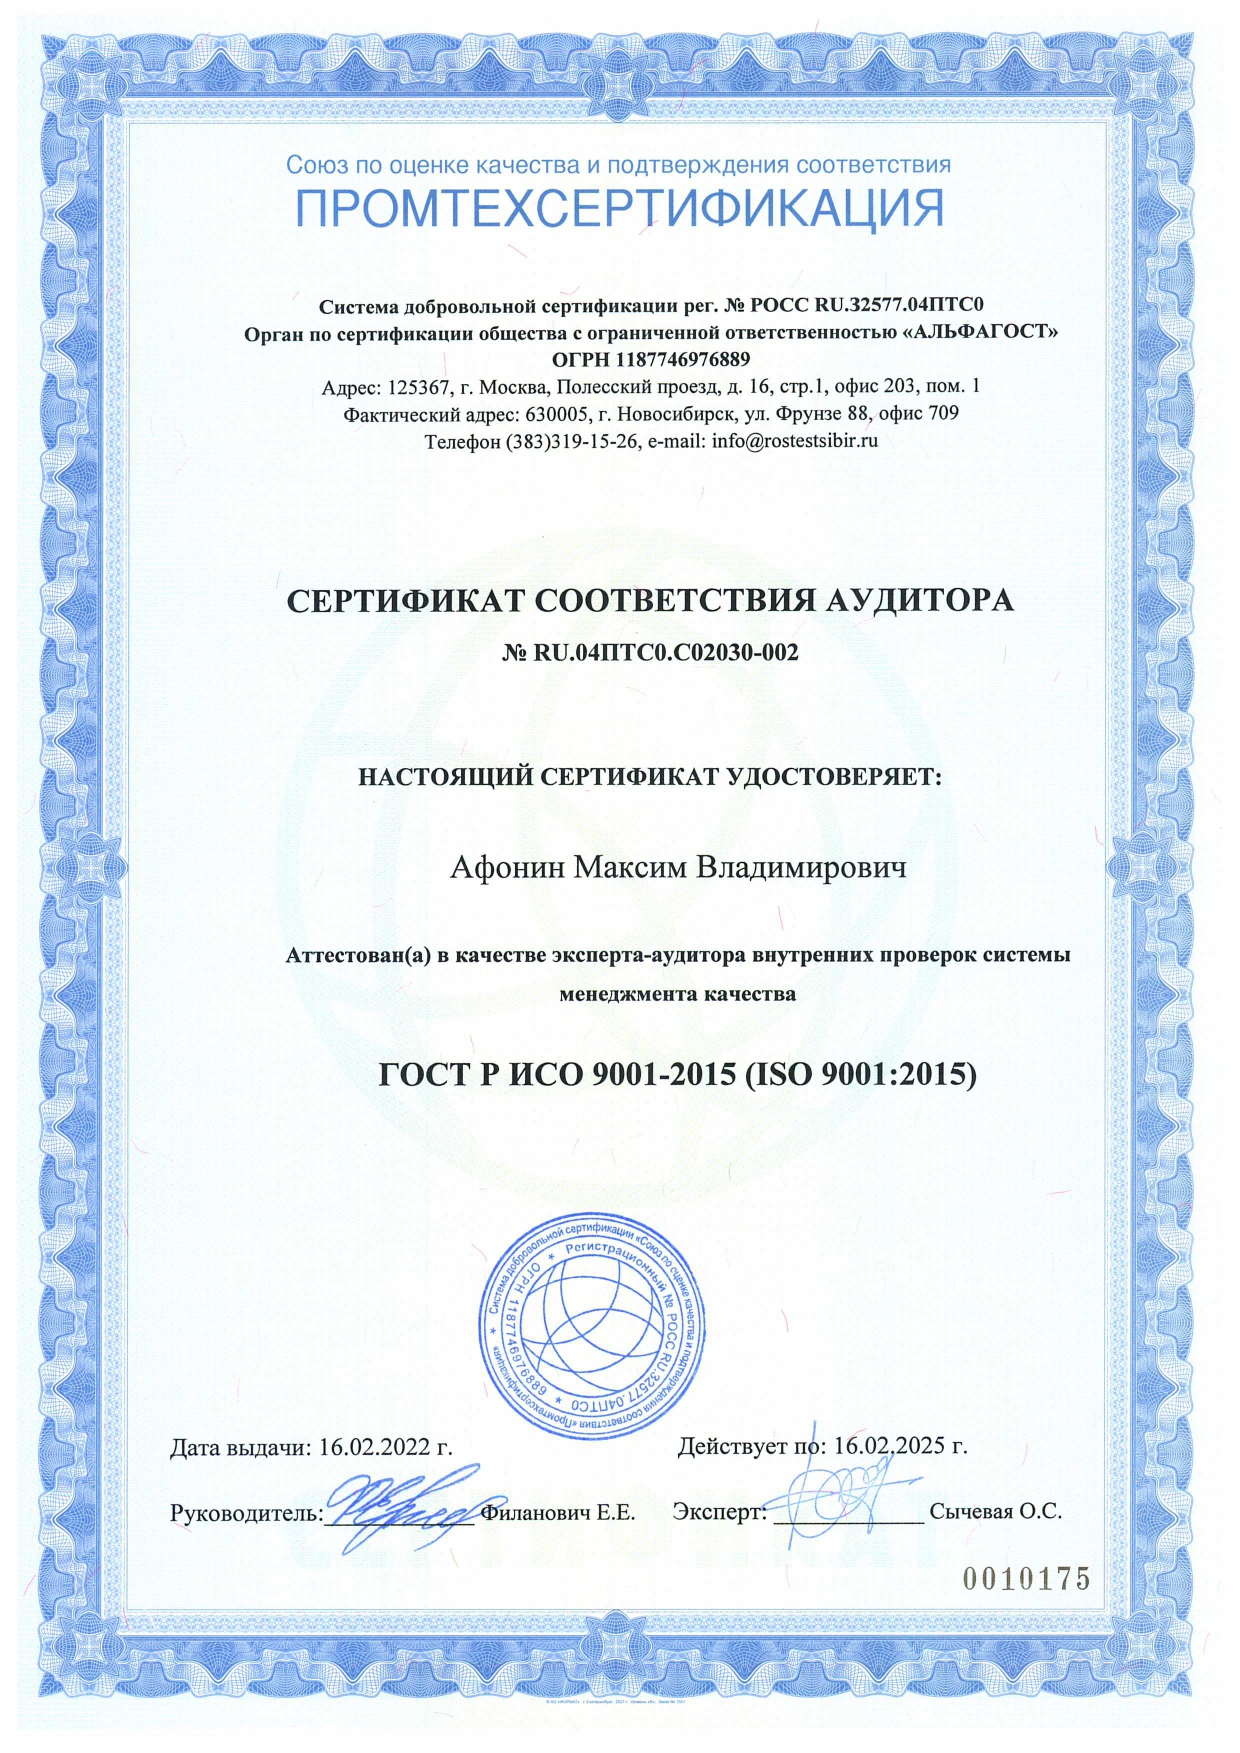 сертификат Хомутова в Союз-Эксперт